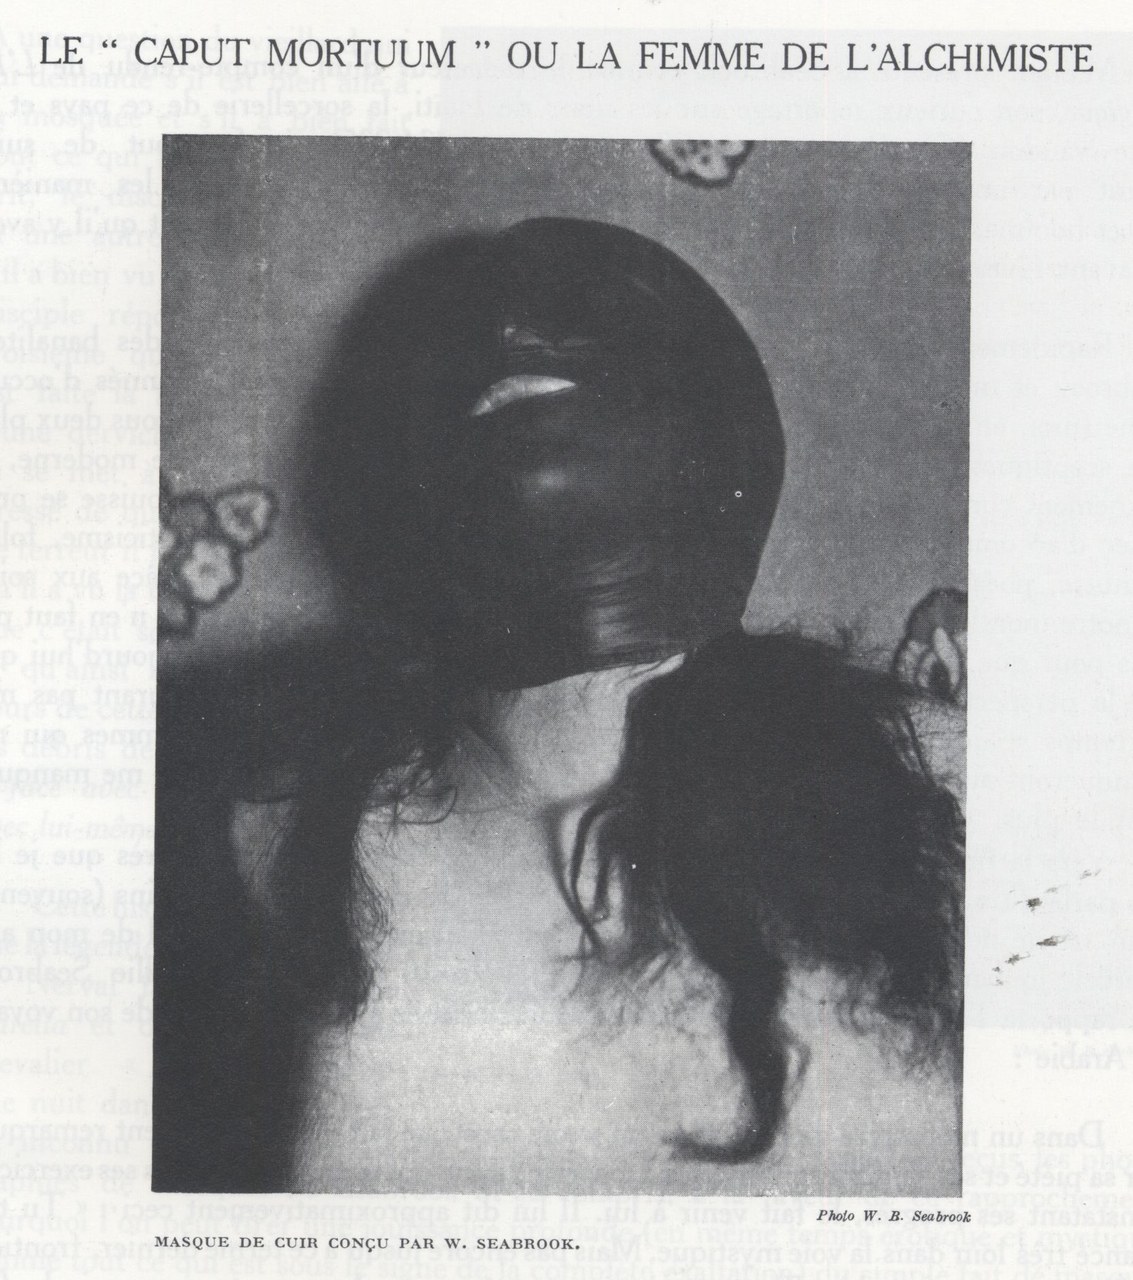 William Seabrook, Masque de cuir conçue par W. Seabook, da Michel Leiris, ‘Le “Caput mortuum”, ou la femme de l’alchimiste’, Documents, vol. 2, 8, 1930, p. 21